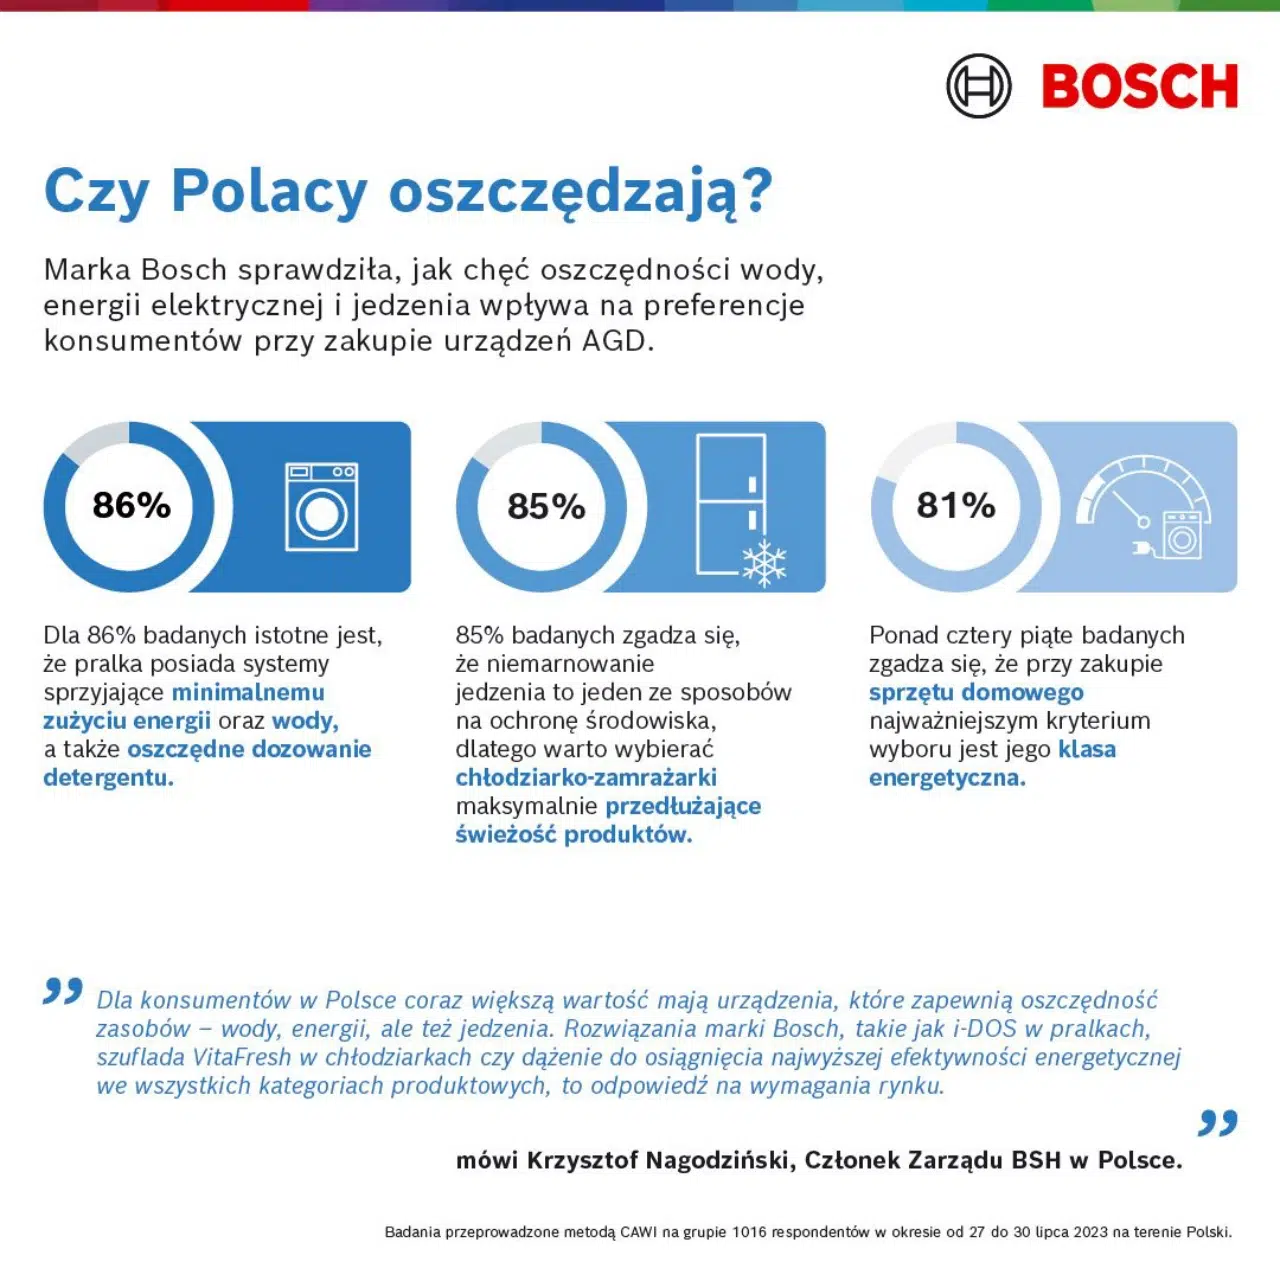 infografika przedstawiająca podejście Polaków do oszczędzania wody, energii elektrycznej i żywności